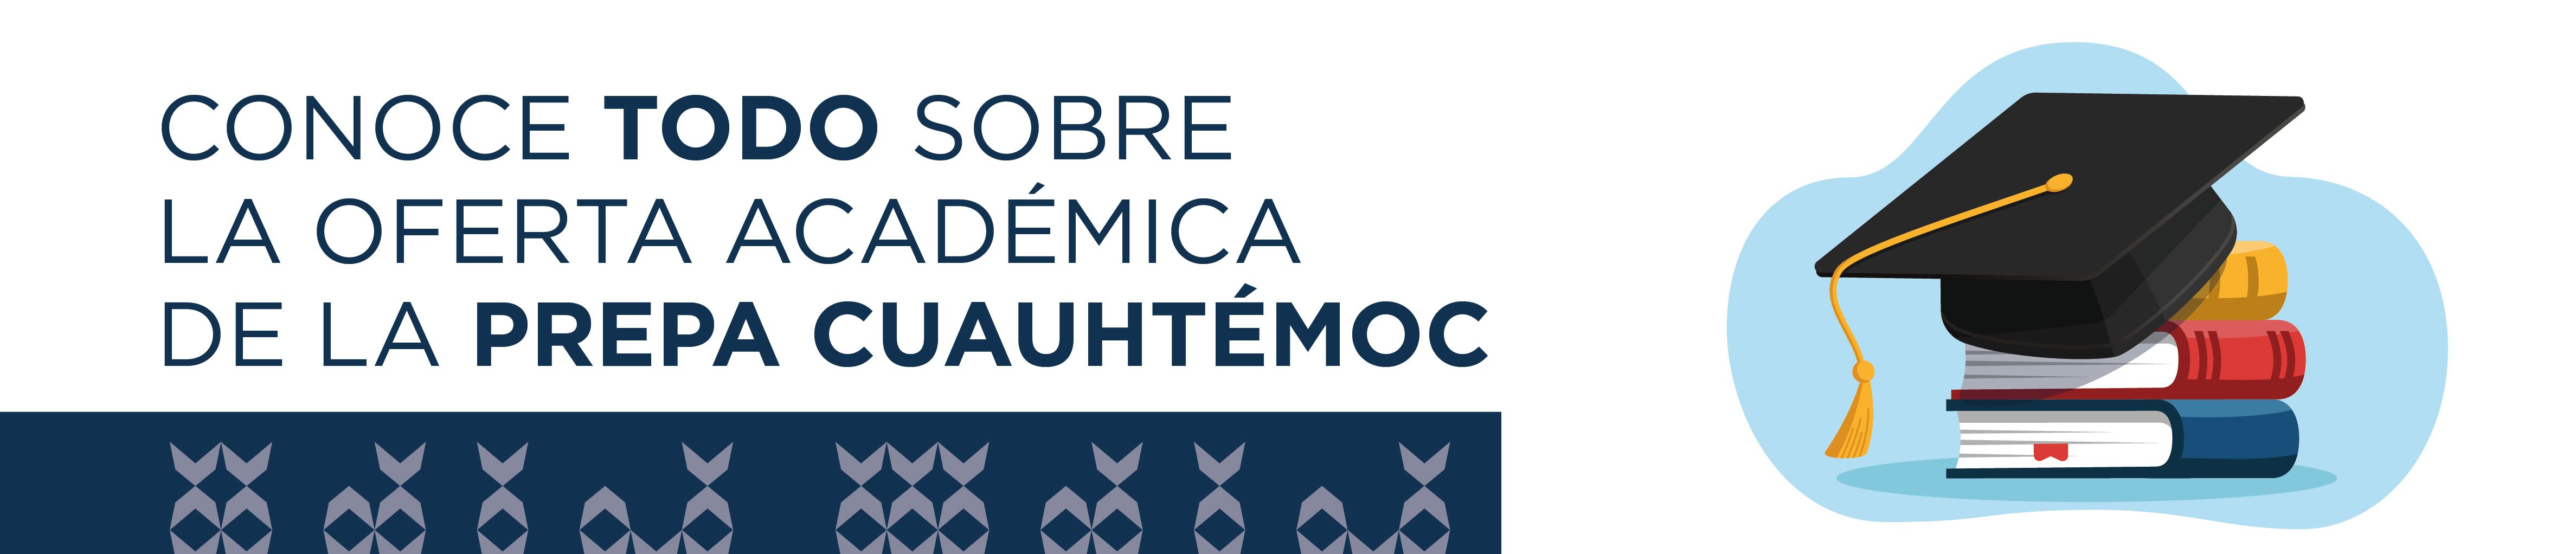 UCSLP Imágenes Artículo 3 SEM 2 Conoce todo sobre la oferta académica de la Prepa Cuauhtémoc - copia_encabezado